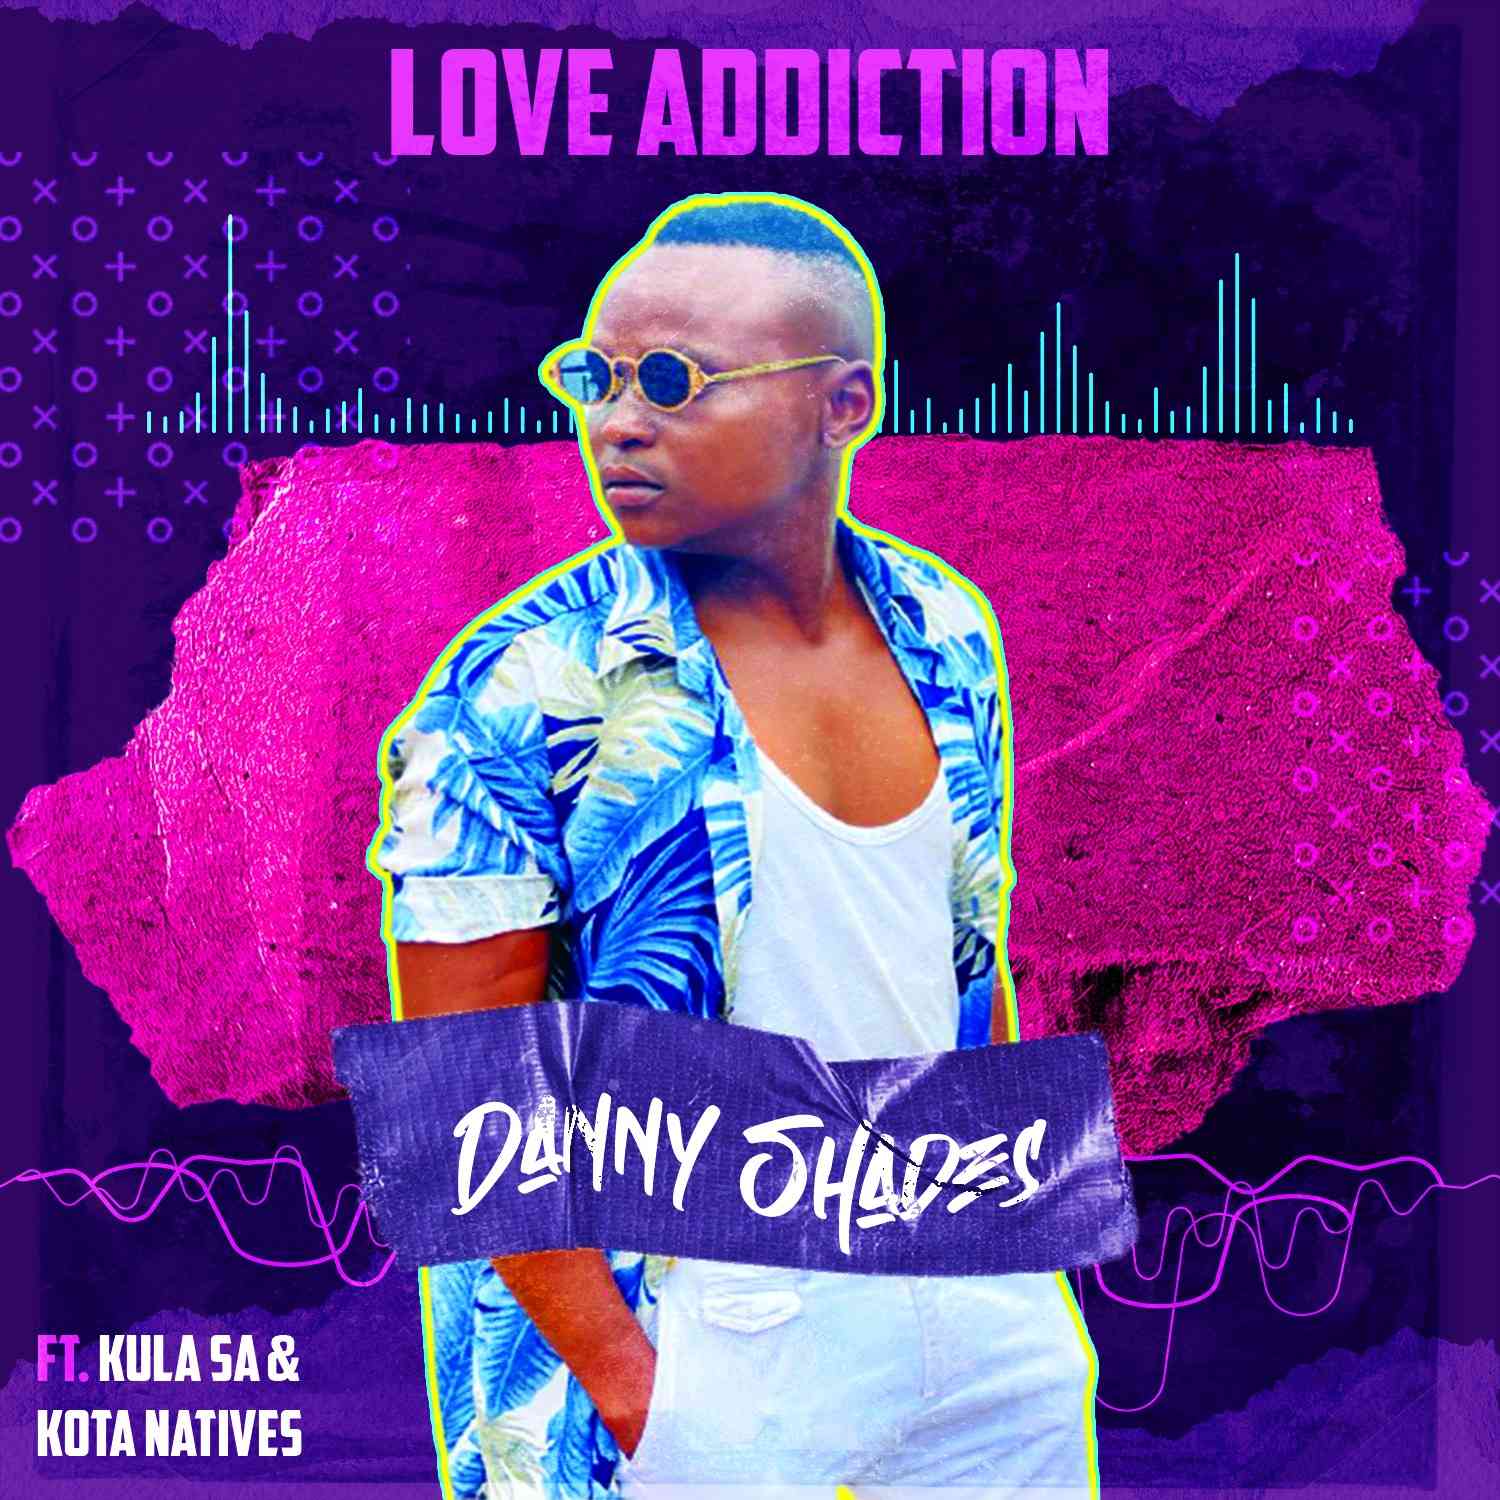 Danny Shades Love Addiction ft. KulaSA & Kota Natives 